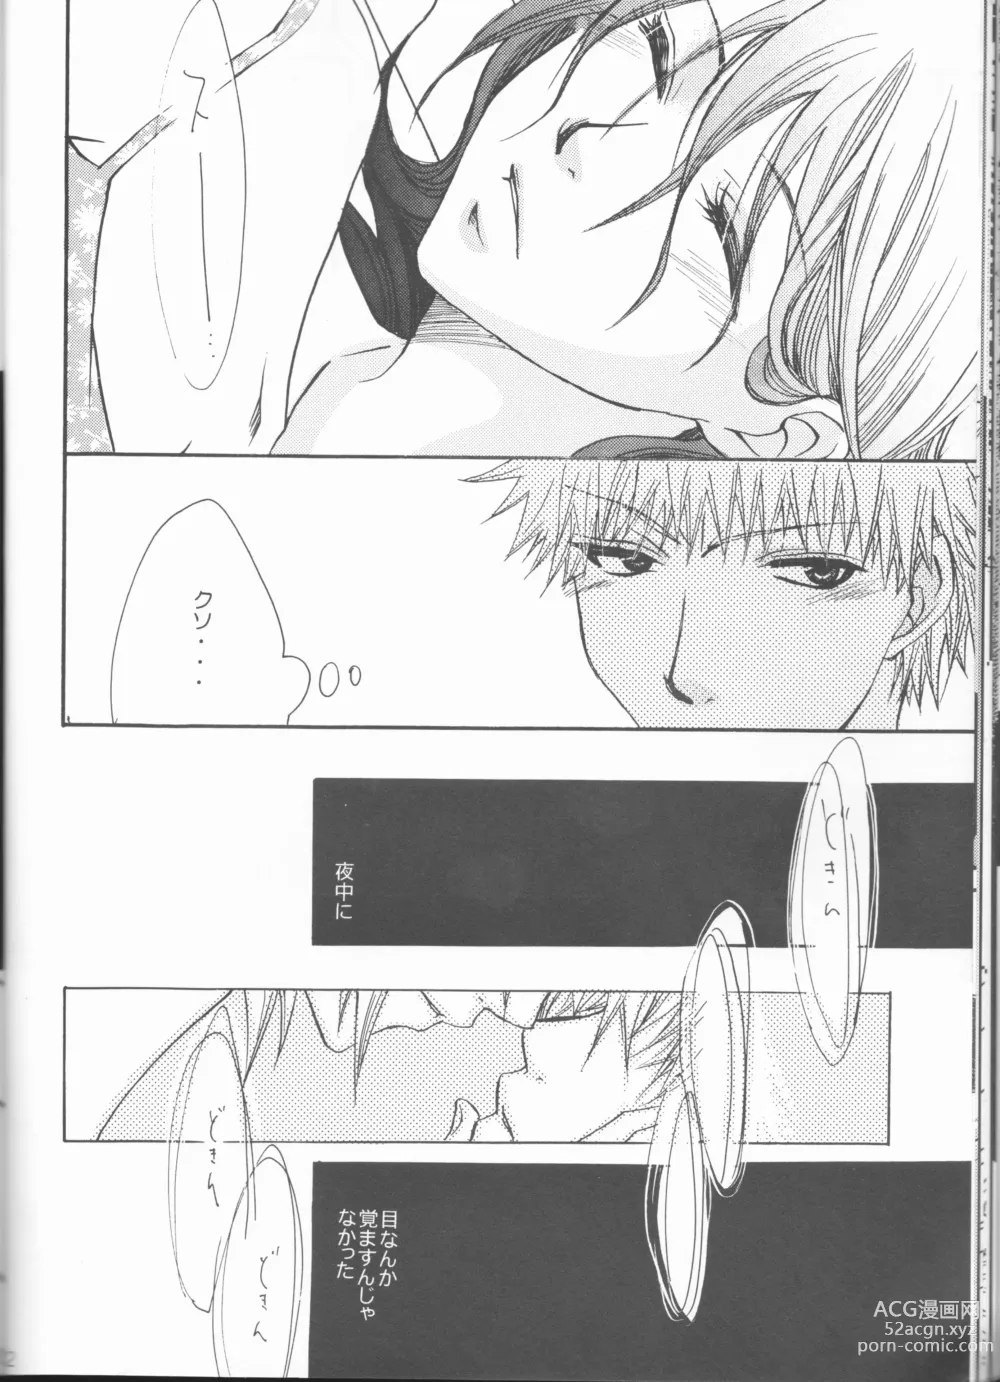 Page 22 of doujinshi Kimi o suki ni natte hajimete no natsu ga kuru.